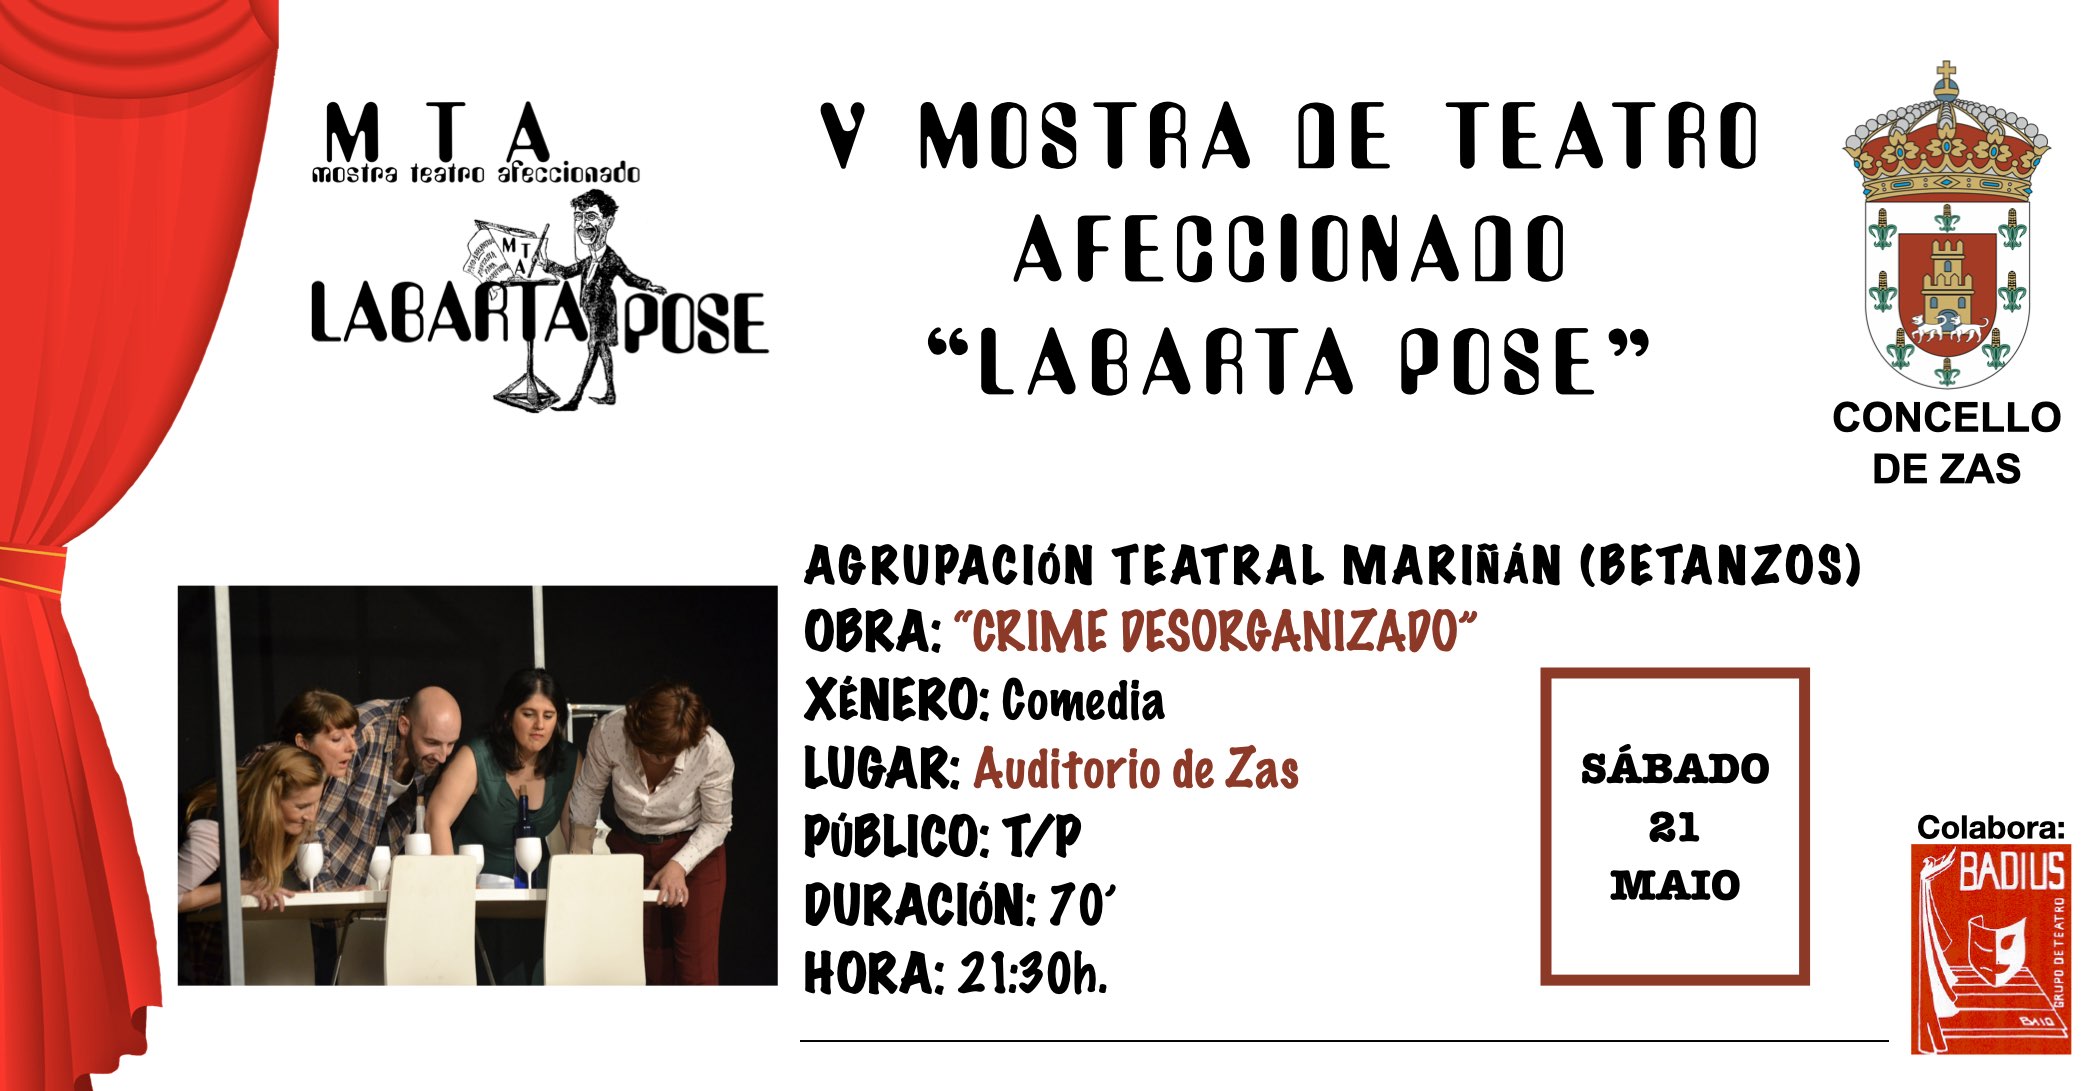 Chegan á súa fin as representacións da V Mostra de Teatro Afeccionado Labarta Pose coa comedia “Crime Desorganizado” da Agrupación Teatral Mariñán